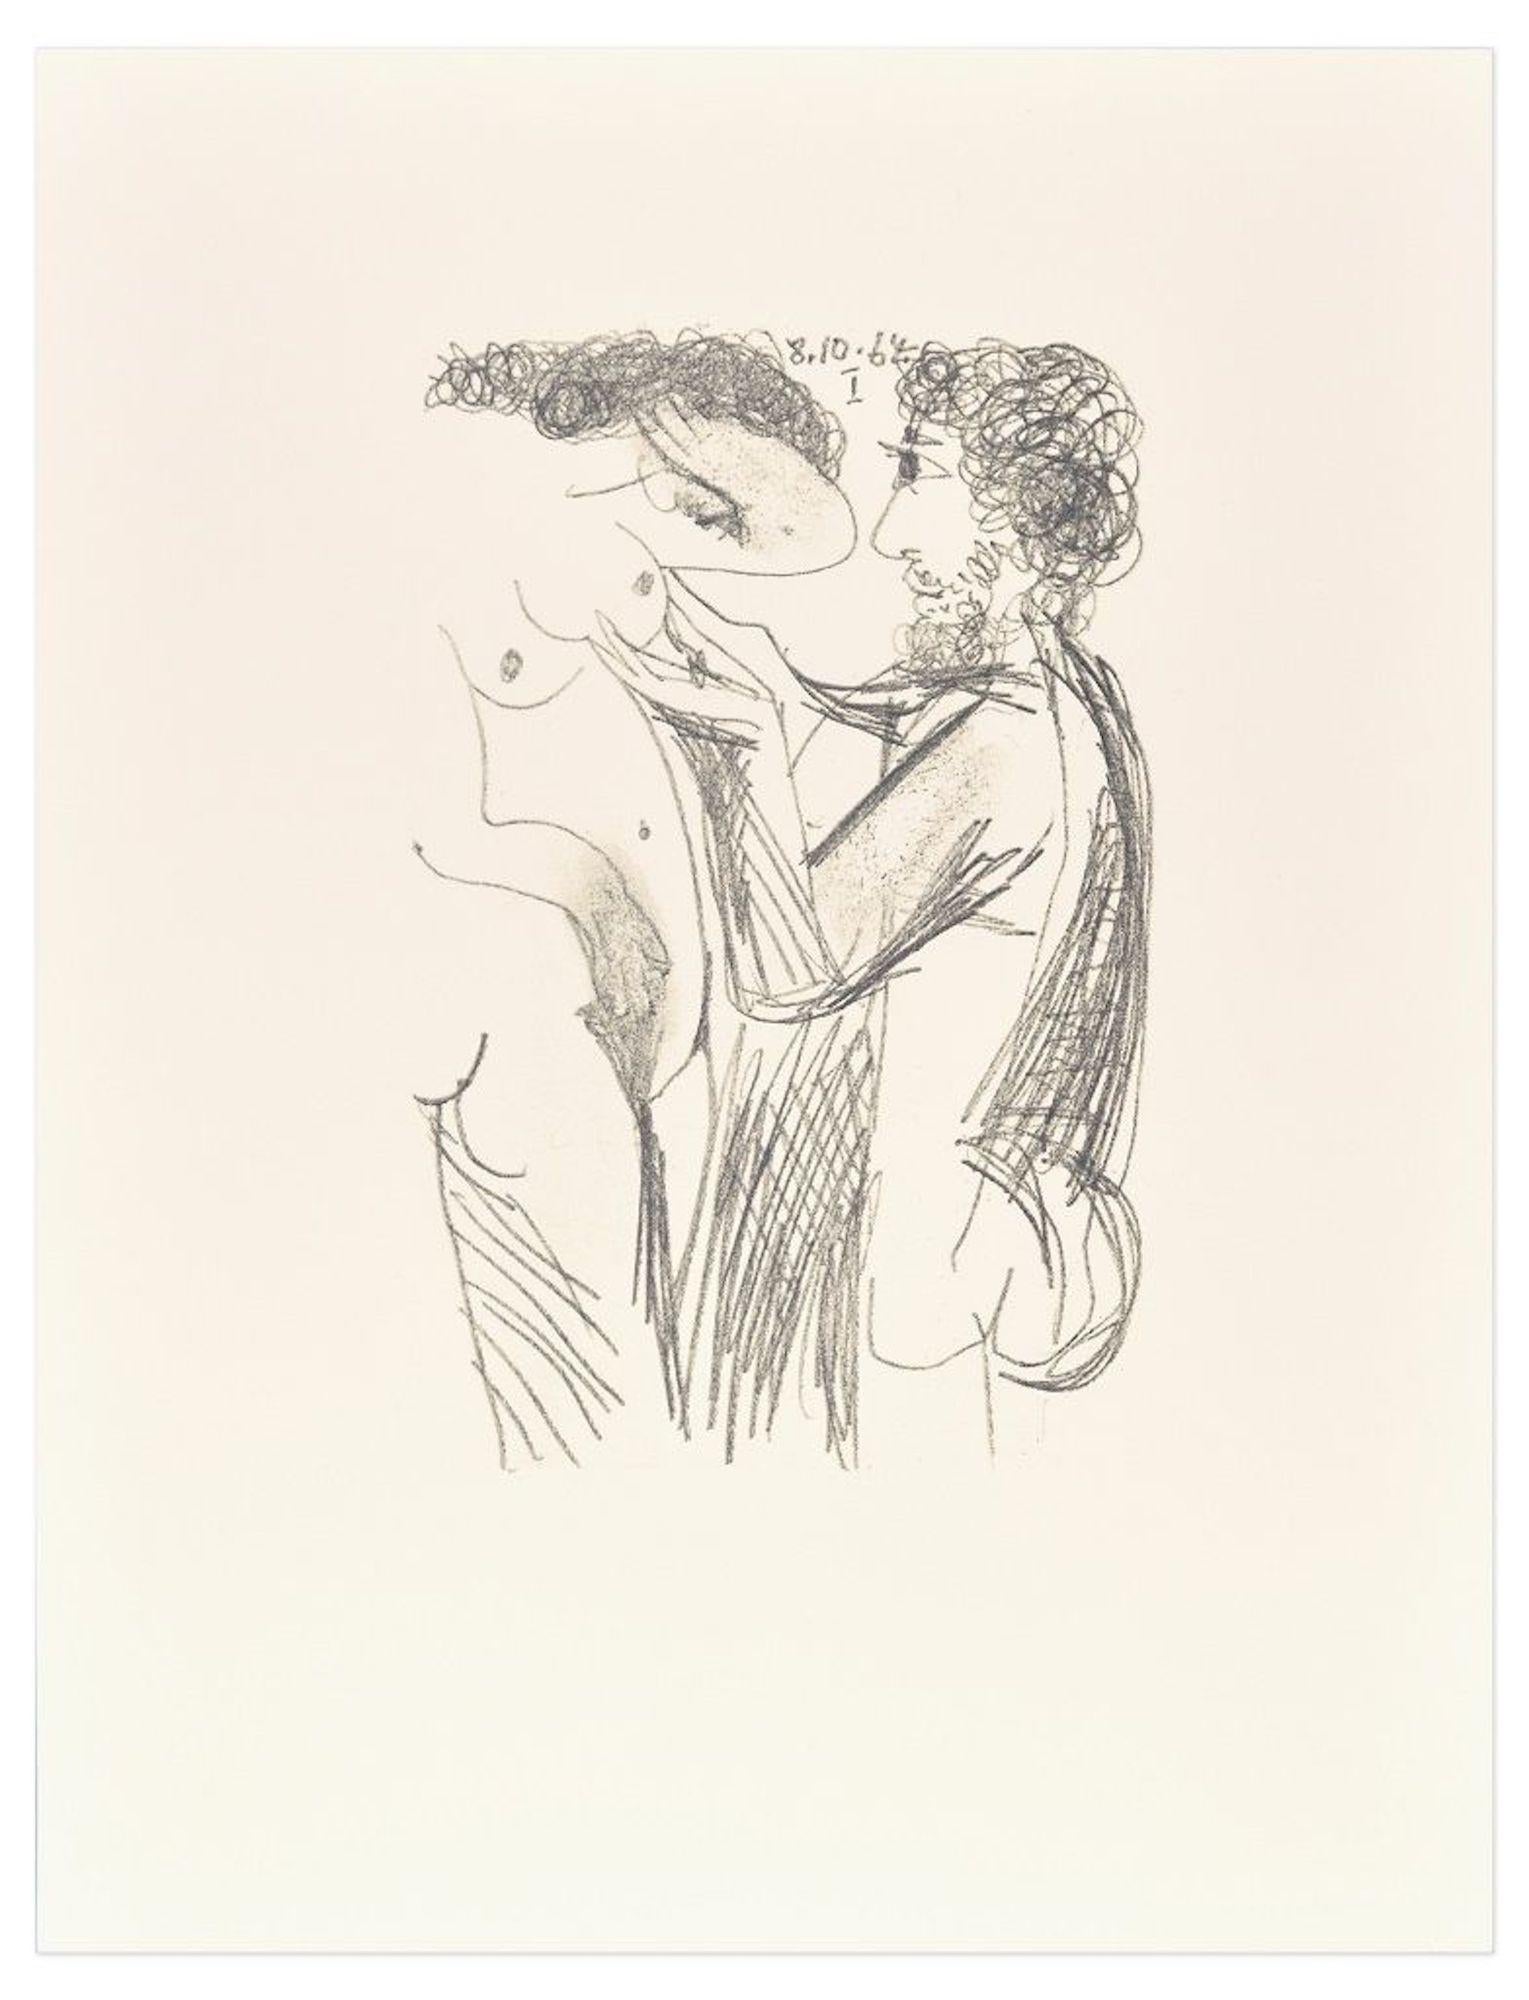 (after) Pablo Picasso Print - Le goût du Bonheur - 8.10.64 I - Lithograph After P. Picasso